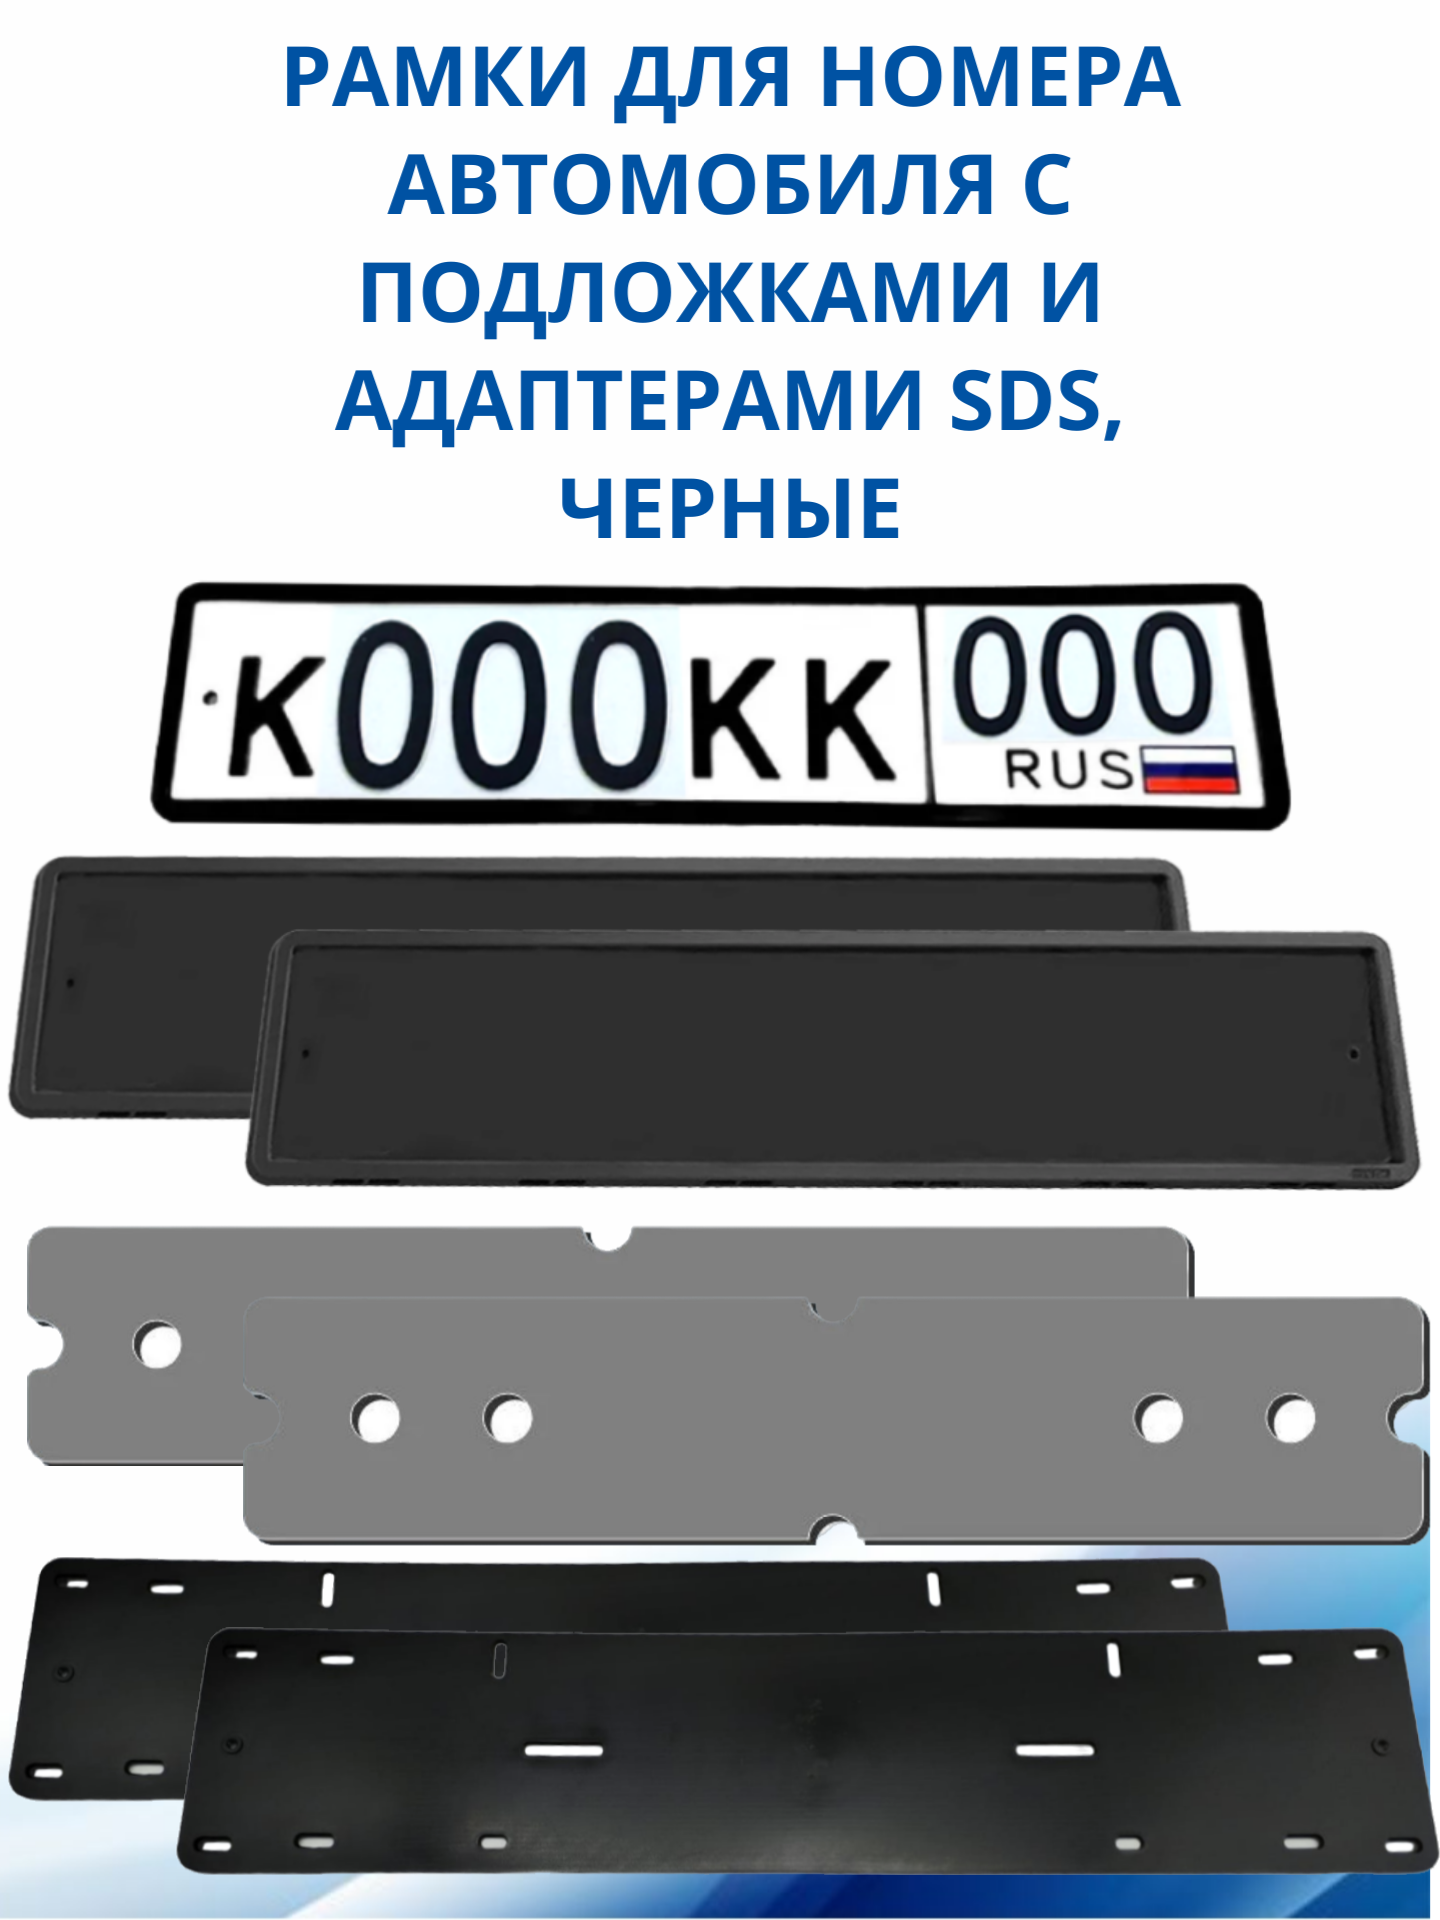 SDS / Рамка для номера автомобиля Черная силикон с подложкой шумоизоляционной и адаптером 2 шт